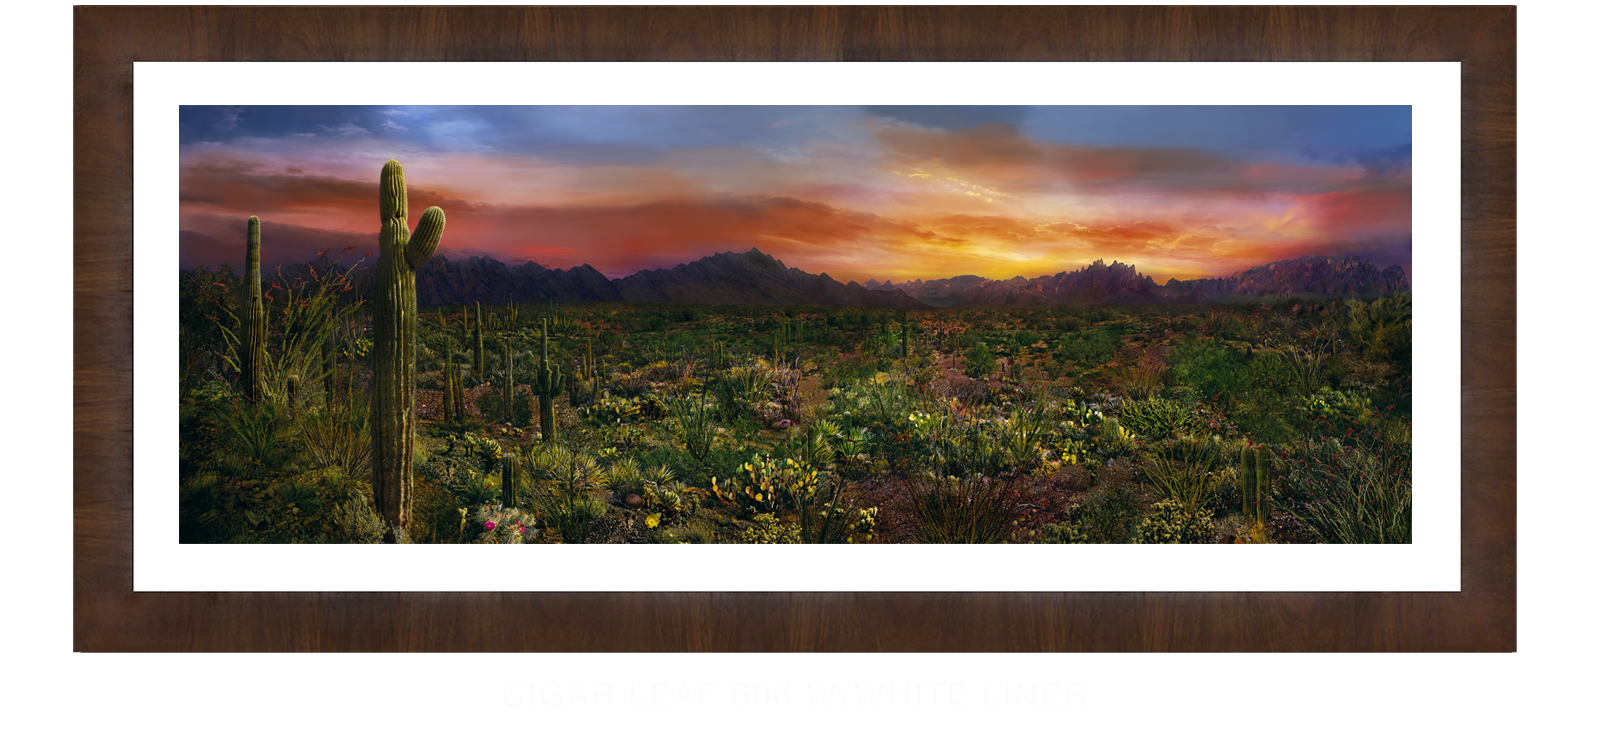 EDEN-VERNALIS-Cigar-Leaf-606-w_Wht-Liner-T.png